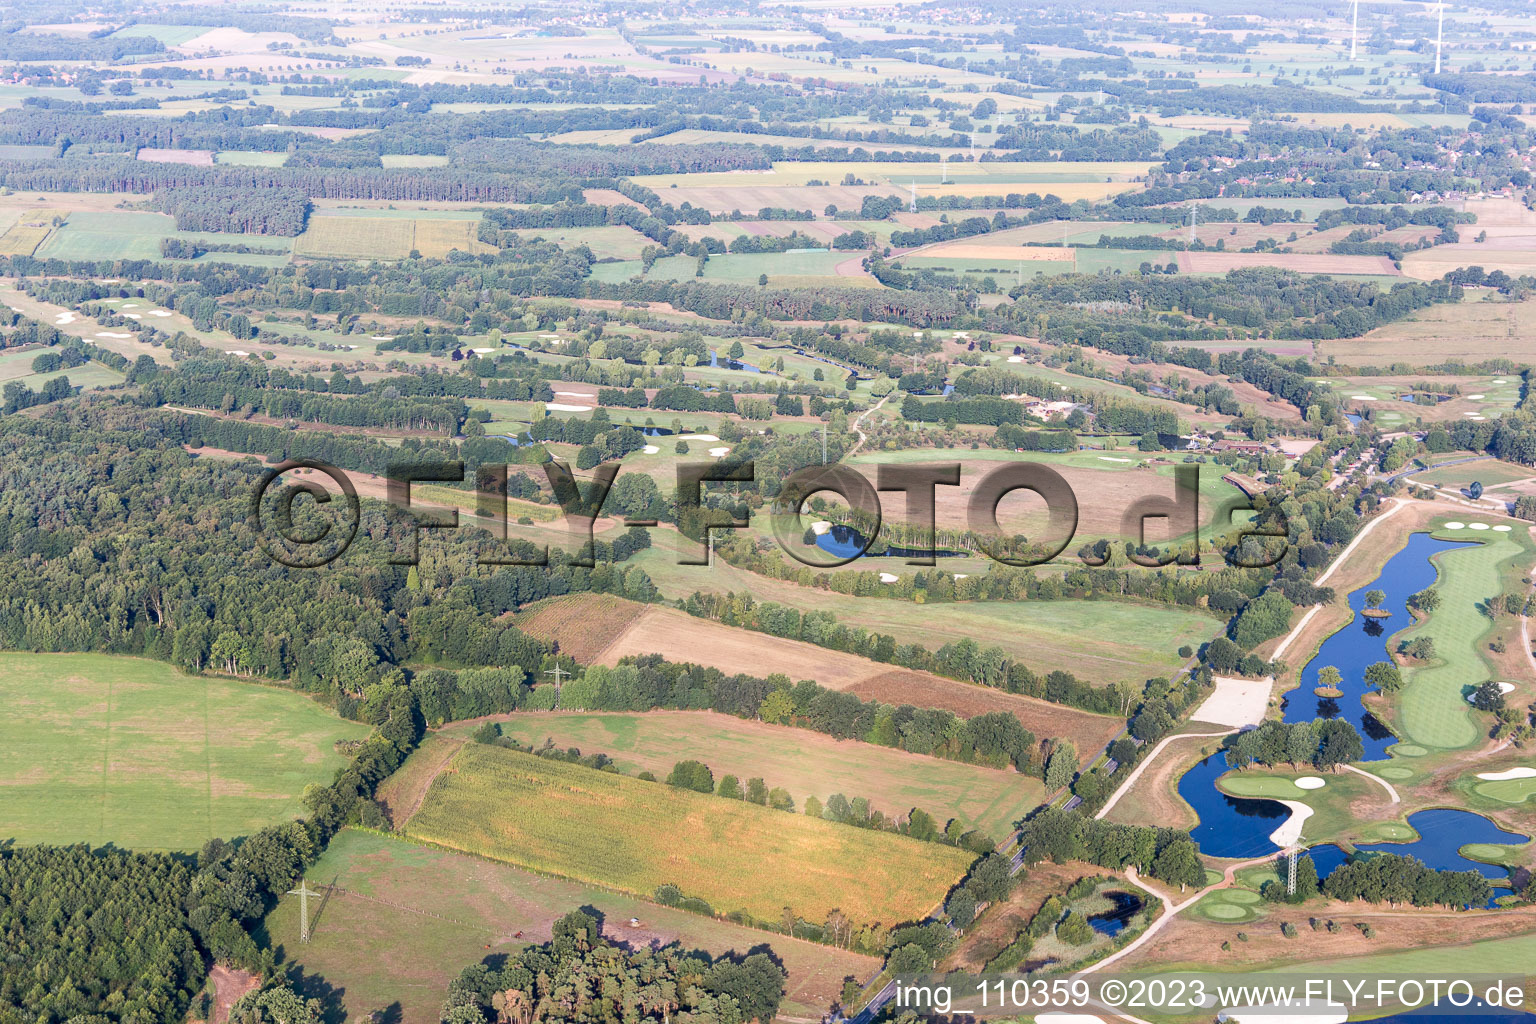 Terrain du parcours de golf Green Eagle à Winsen (Luhe) dans le département Basse-Saxe, Allemagne du point de vue du drone